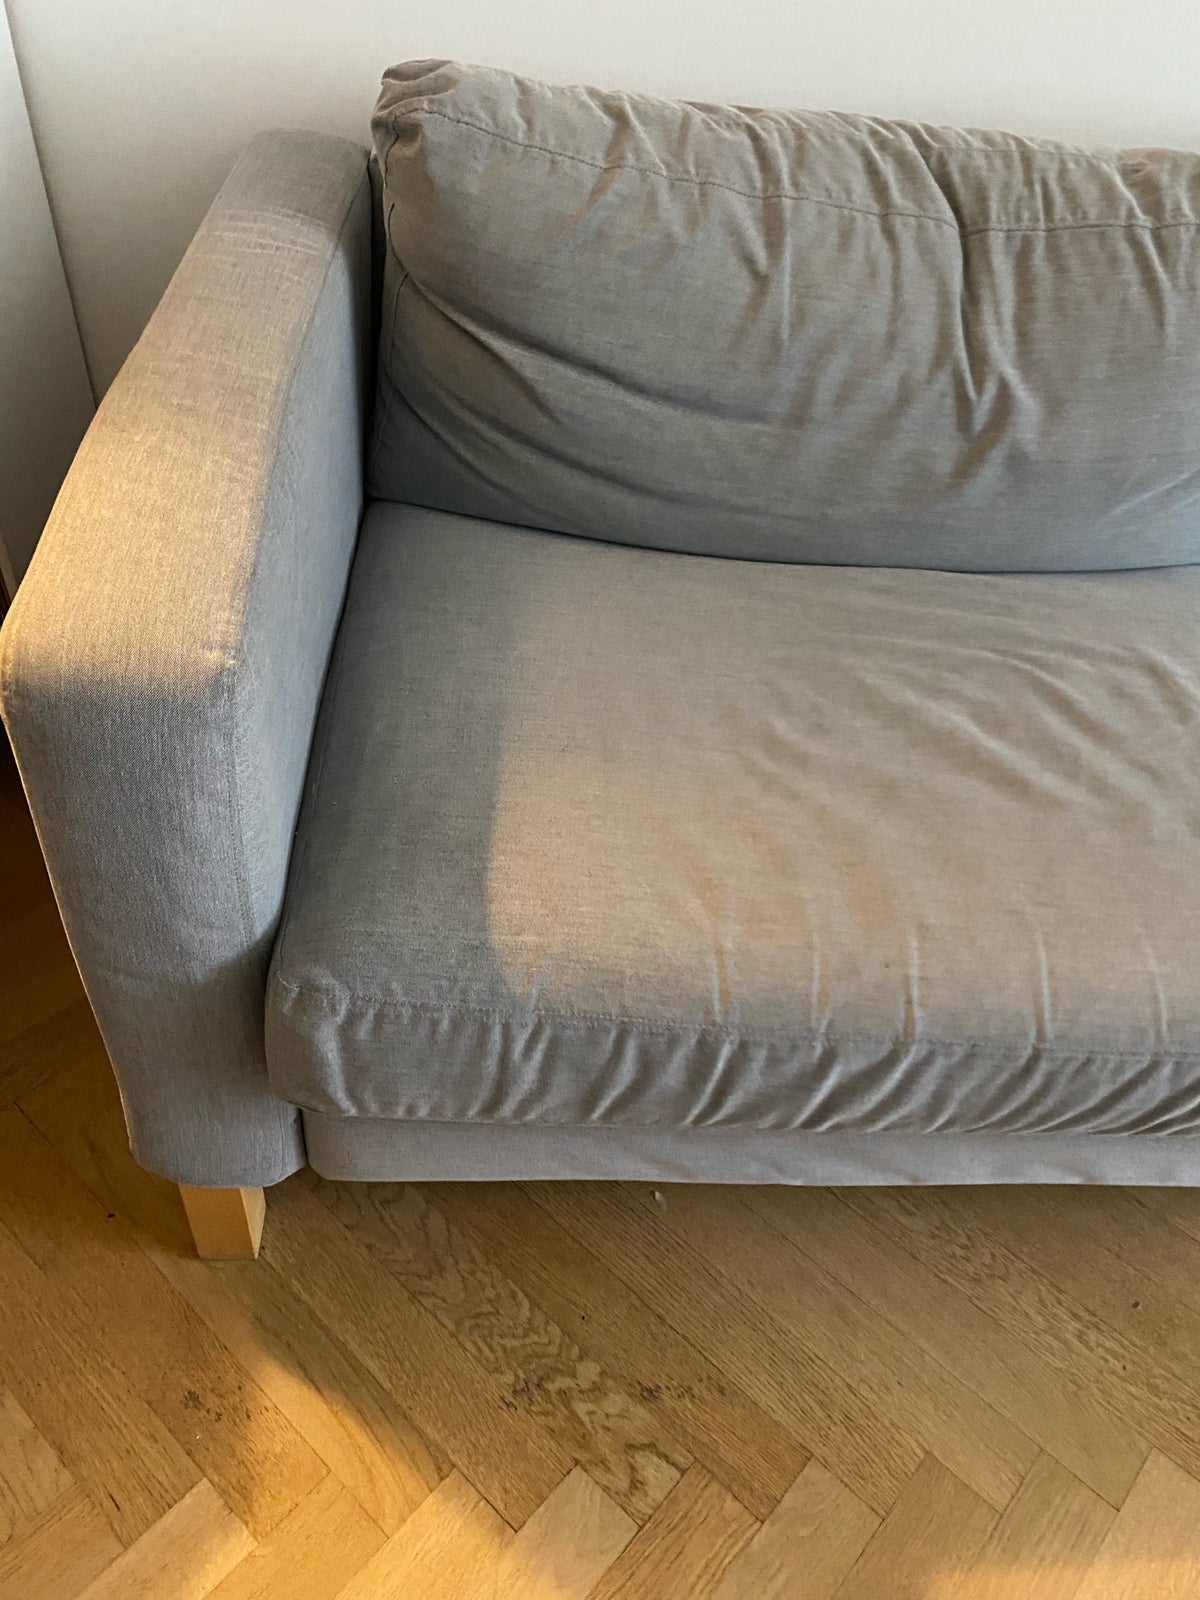 IKEA Karlstad 3-personers sofa.
Betræk kan tage...